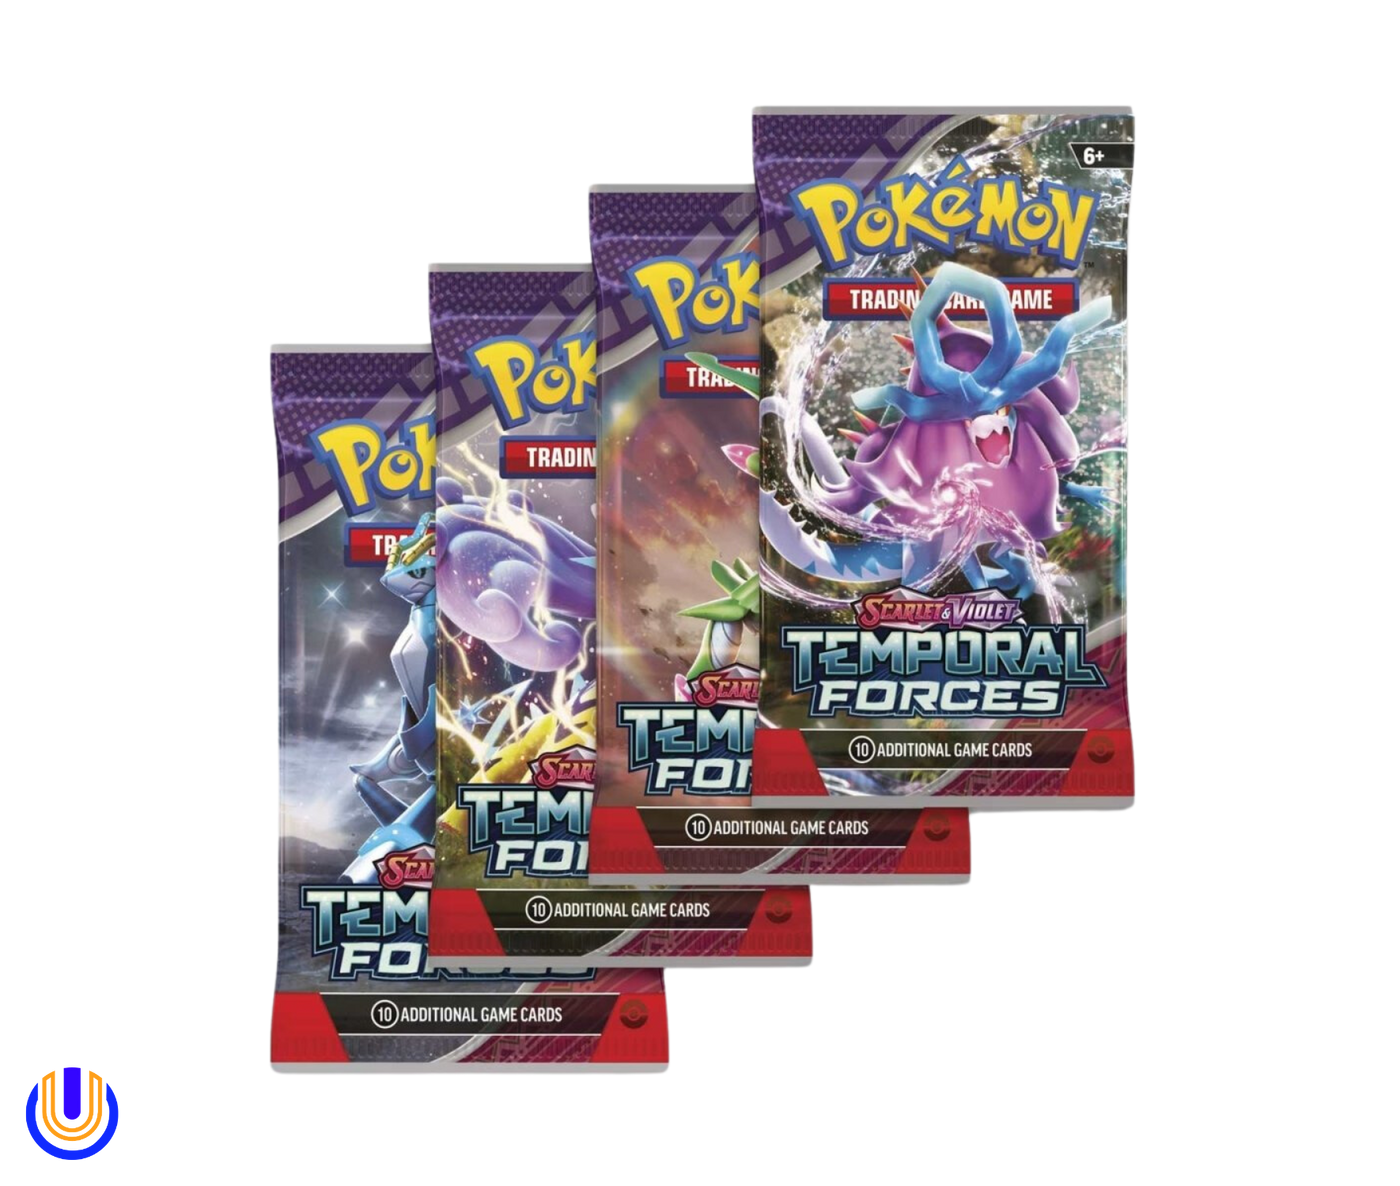 Pokémon TCG: Scarlet & Violet-Temporal Forces Booster Display Box (36 Packs)